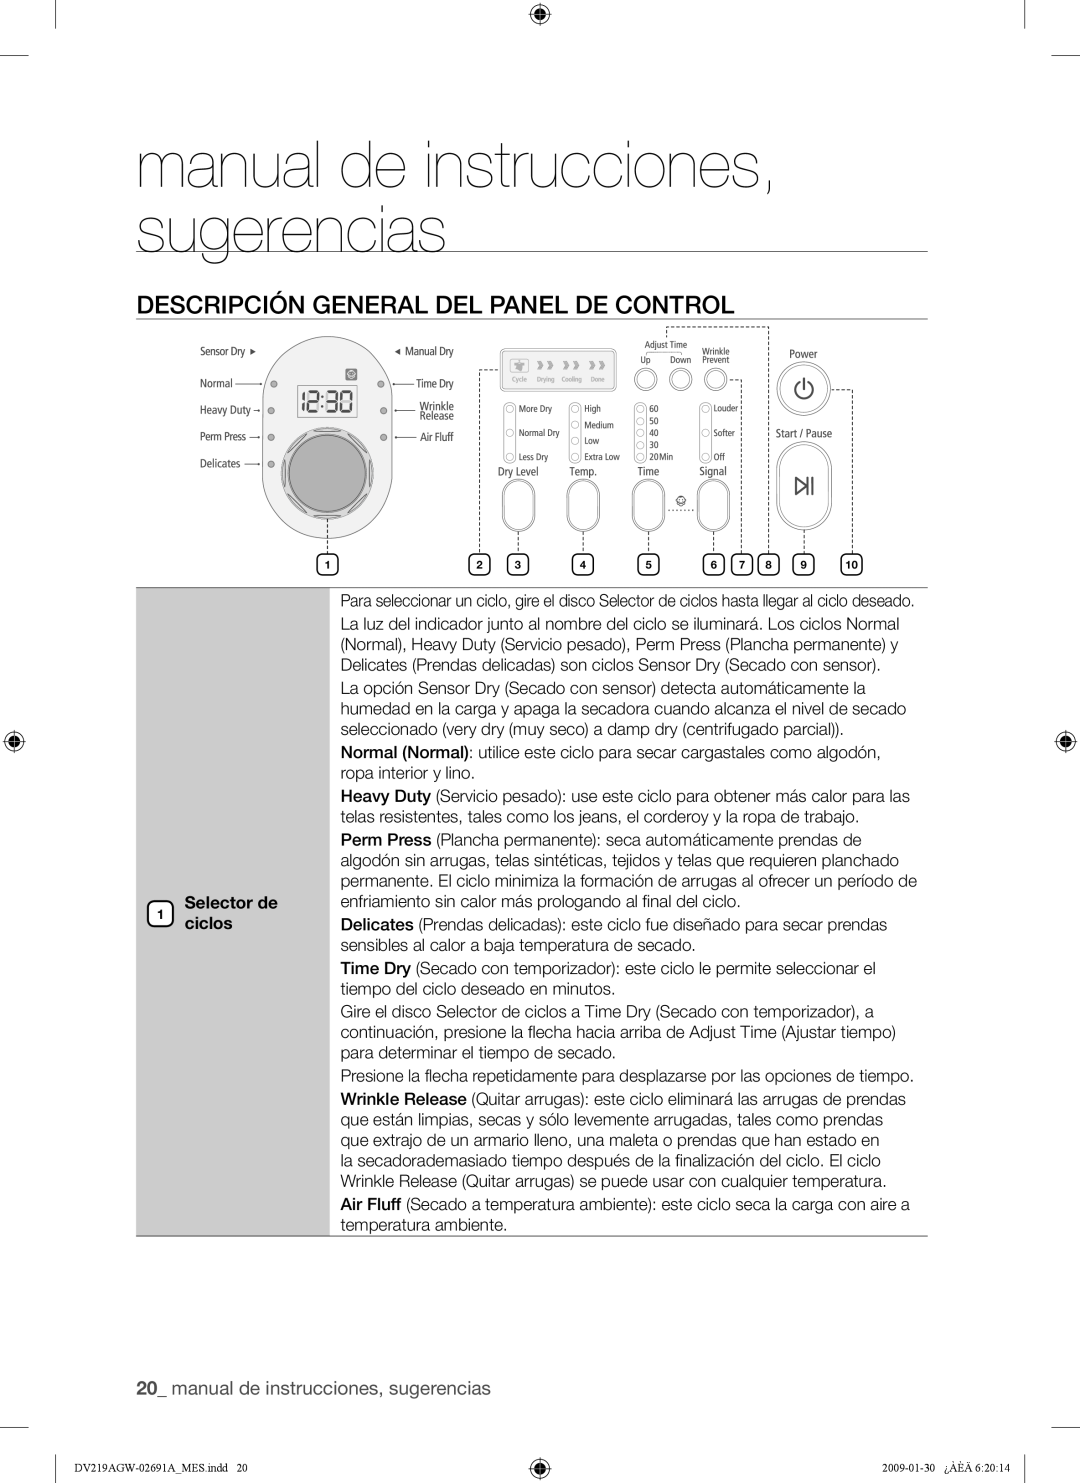 Samsung DV219AE* manual de instrucciones, sugerencias, Descripción General Del Panel De Control, Selector de 1 ciclos 